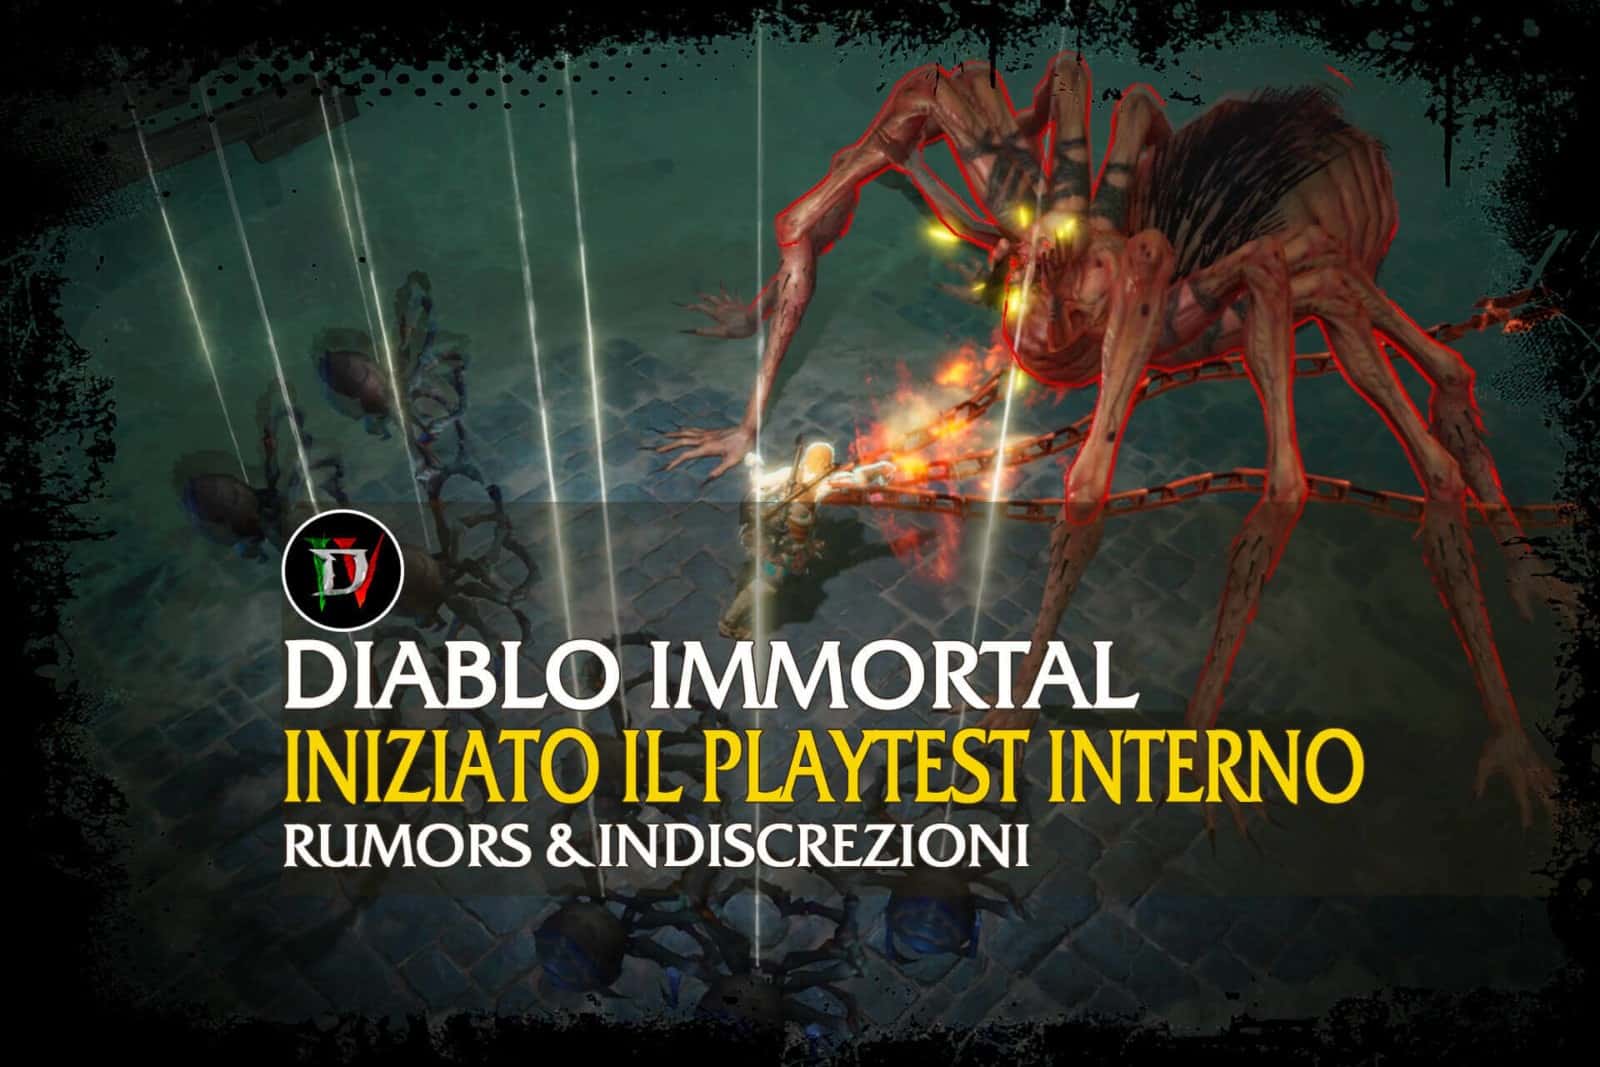 diablo immortal release date reddit 2021